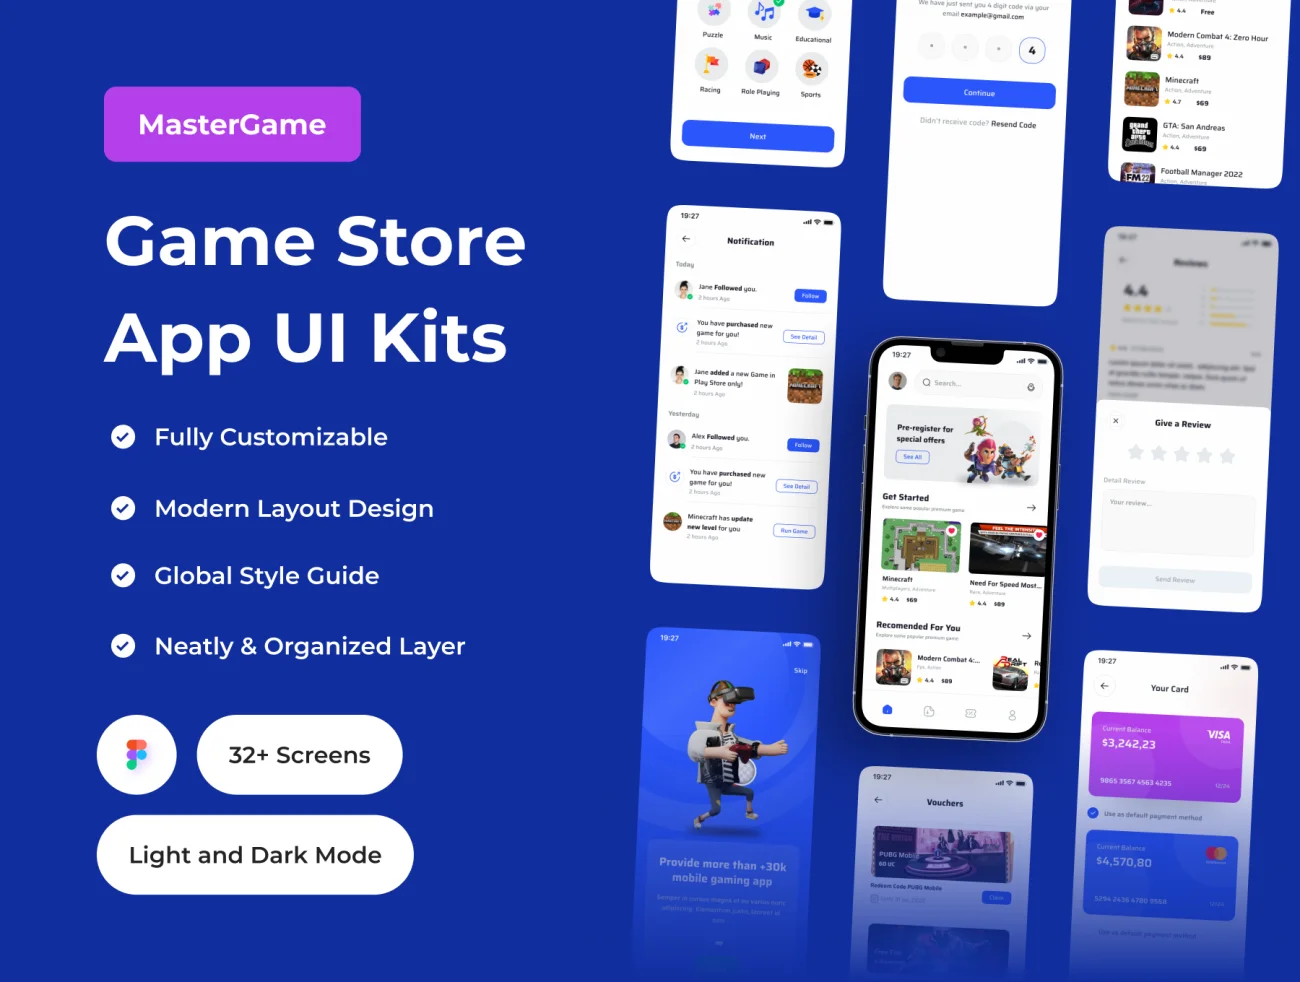 游戏商店应用程序 UI 套件32屏 MasterGame - Game Store App UI Kit .figma-UI/UX、ui套件、主页、介绍、卡片式、应用、详情-到位啦UI